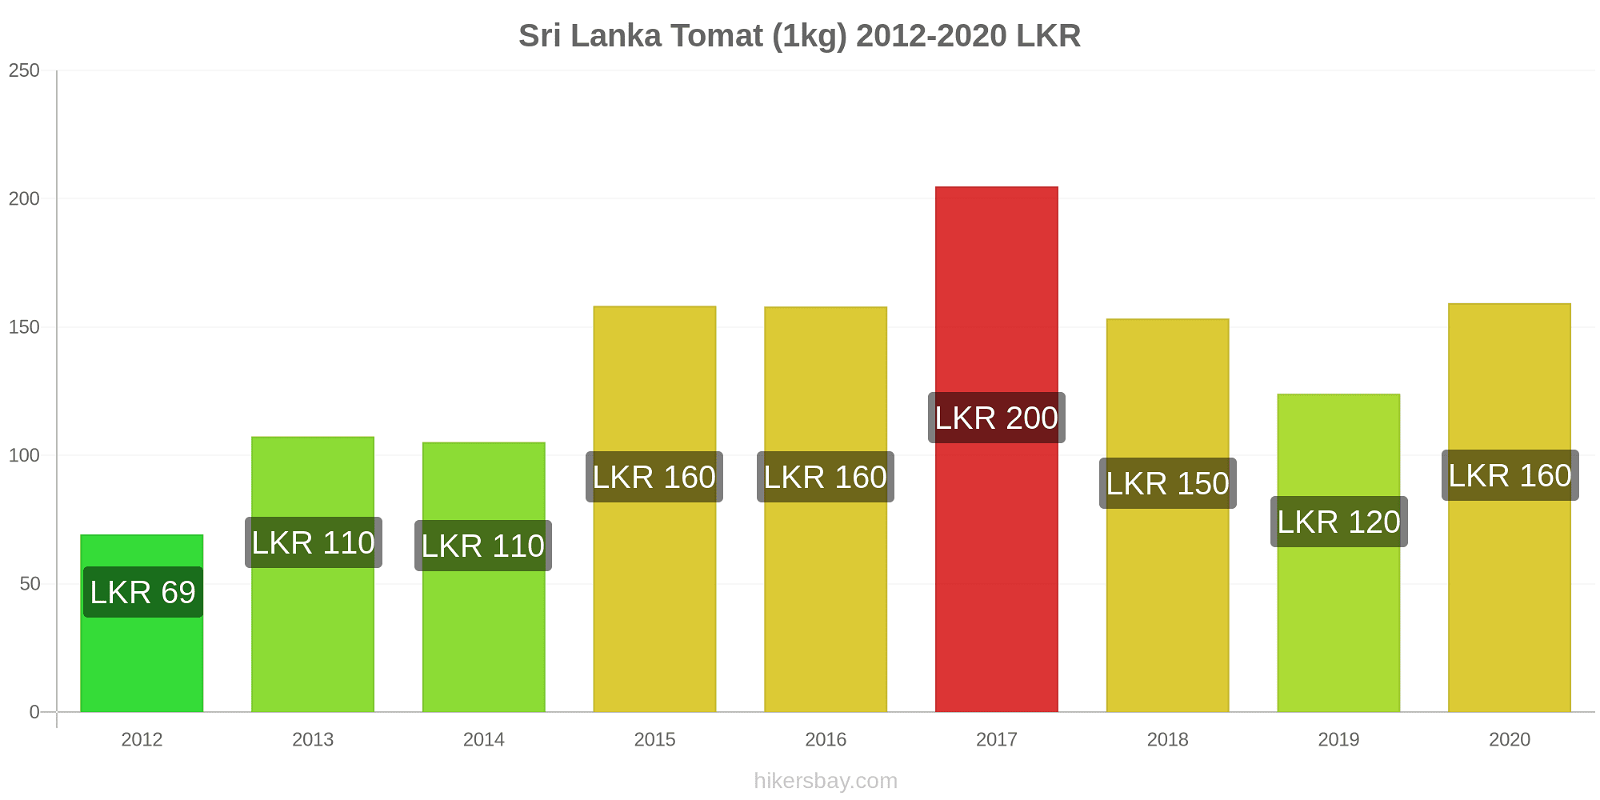 Sri Lanka prisförändringar Tomat (1kg) hikersbay.com